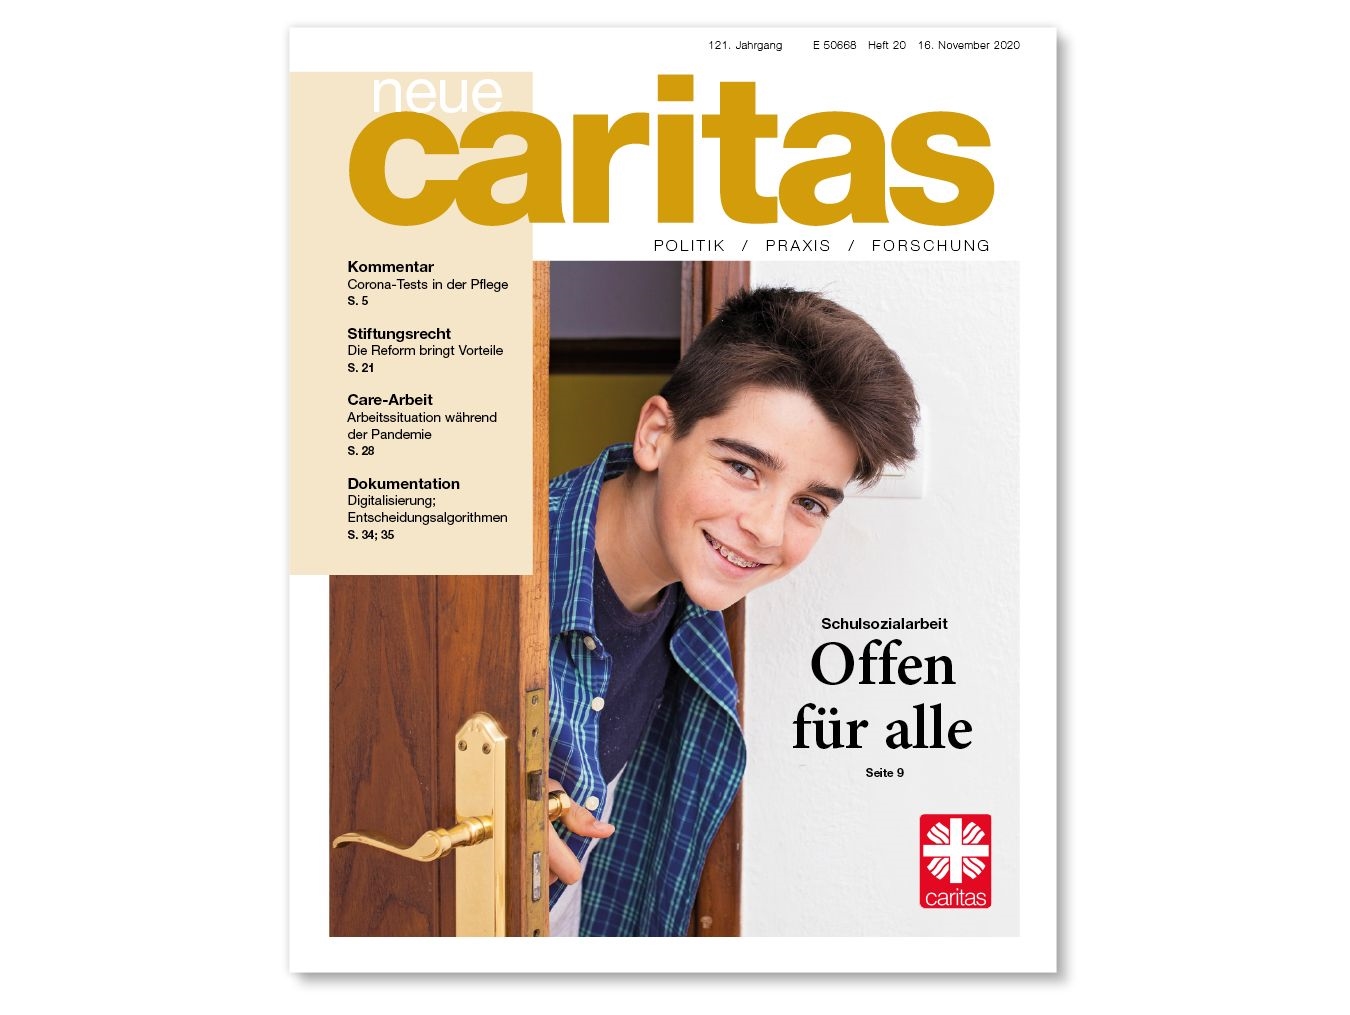 Das Cover der Zeitschrift Neue Caritas Print (Heft 16/2018)